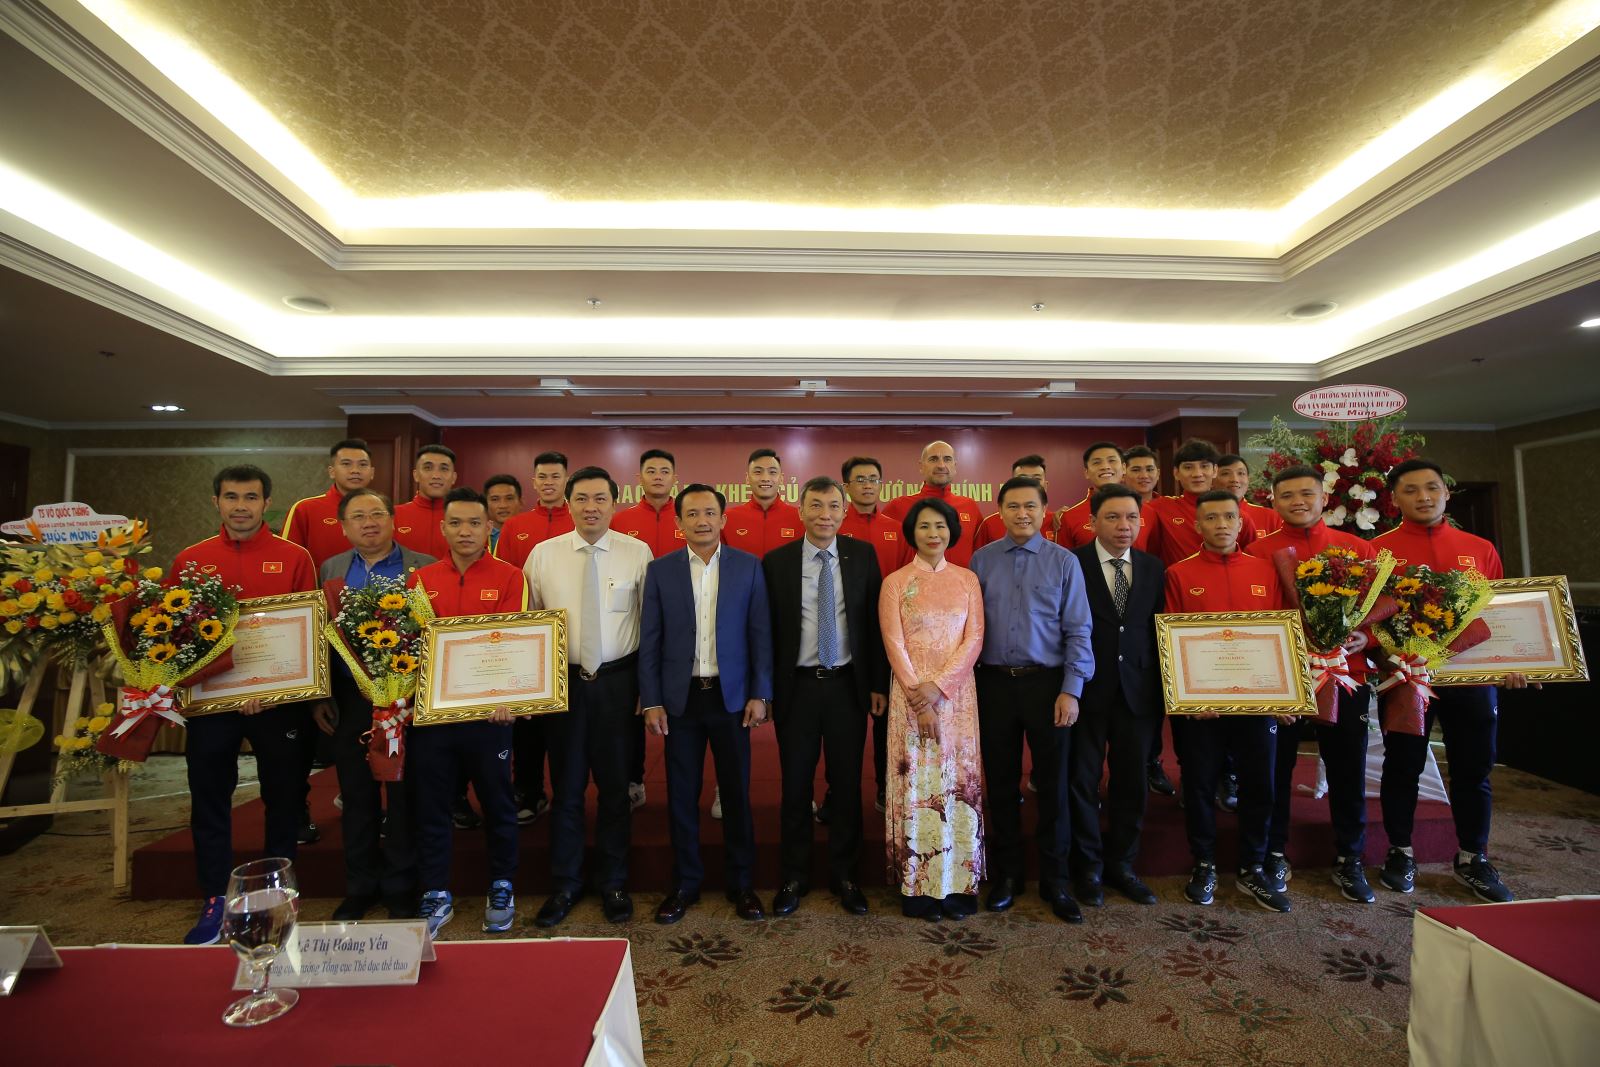 Đội tuyển futsal Việt Nam nhận bằng khen của Thủ tướng Chính phủ vào chiều 16-2 tại TPHCM. Ảnh: Anh Phương